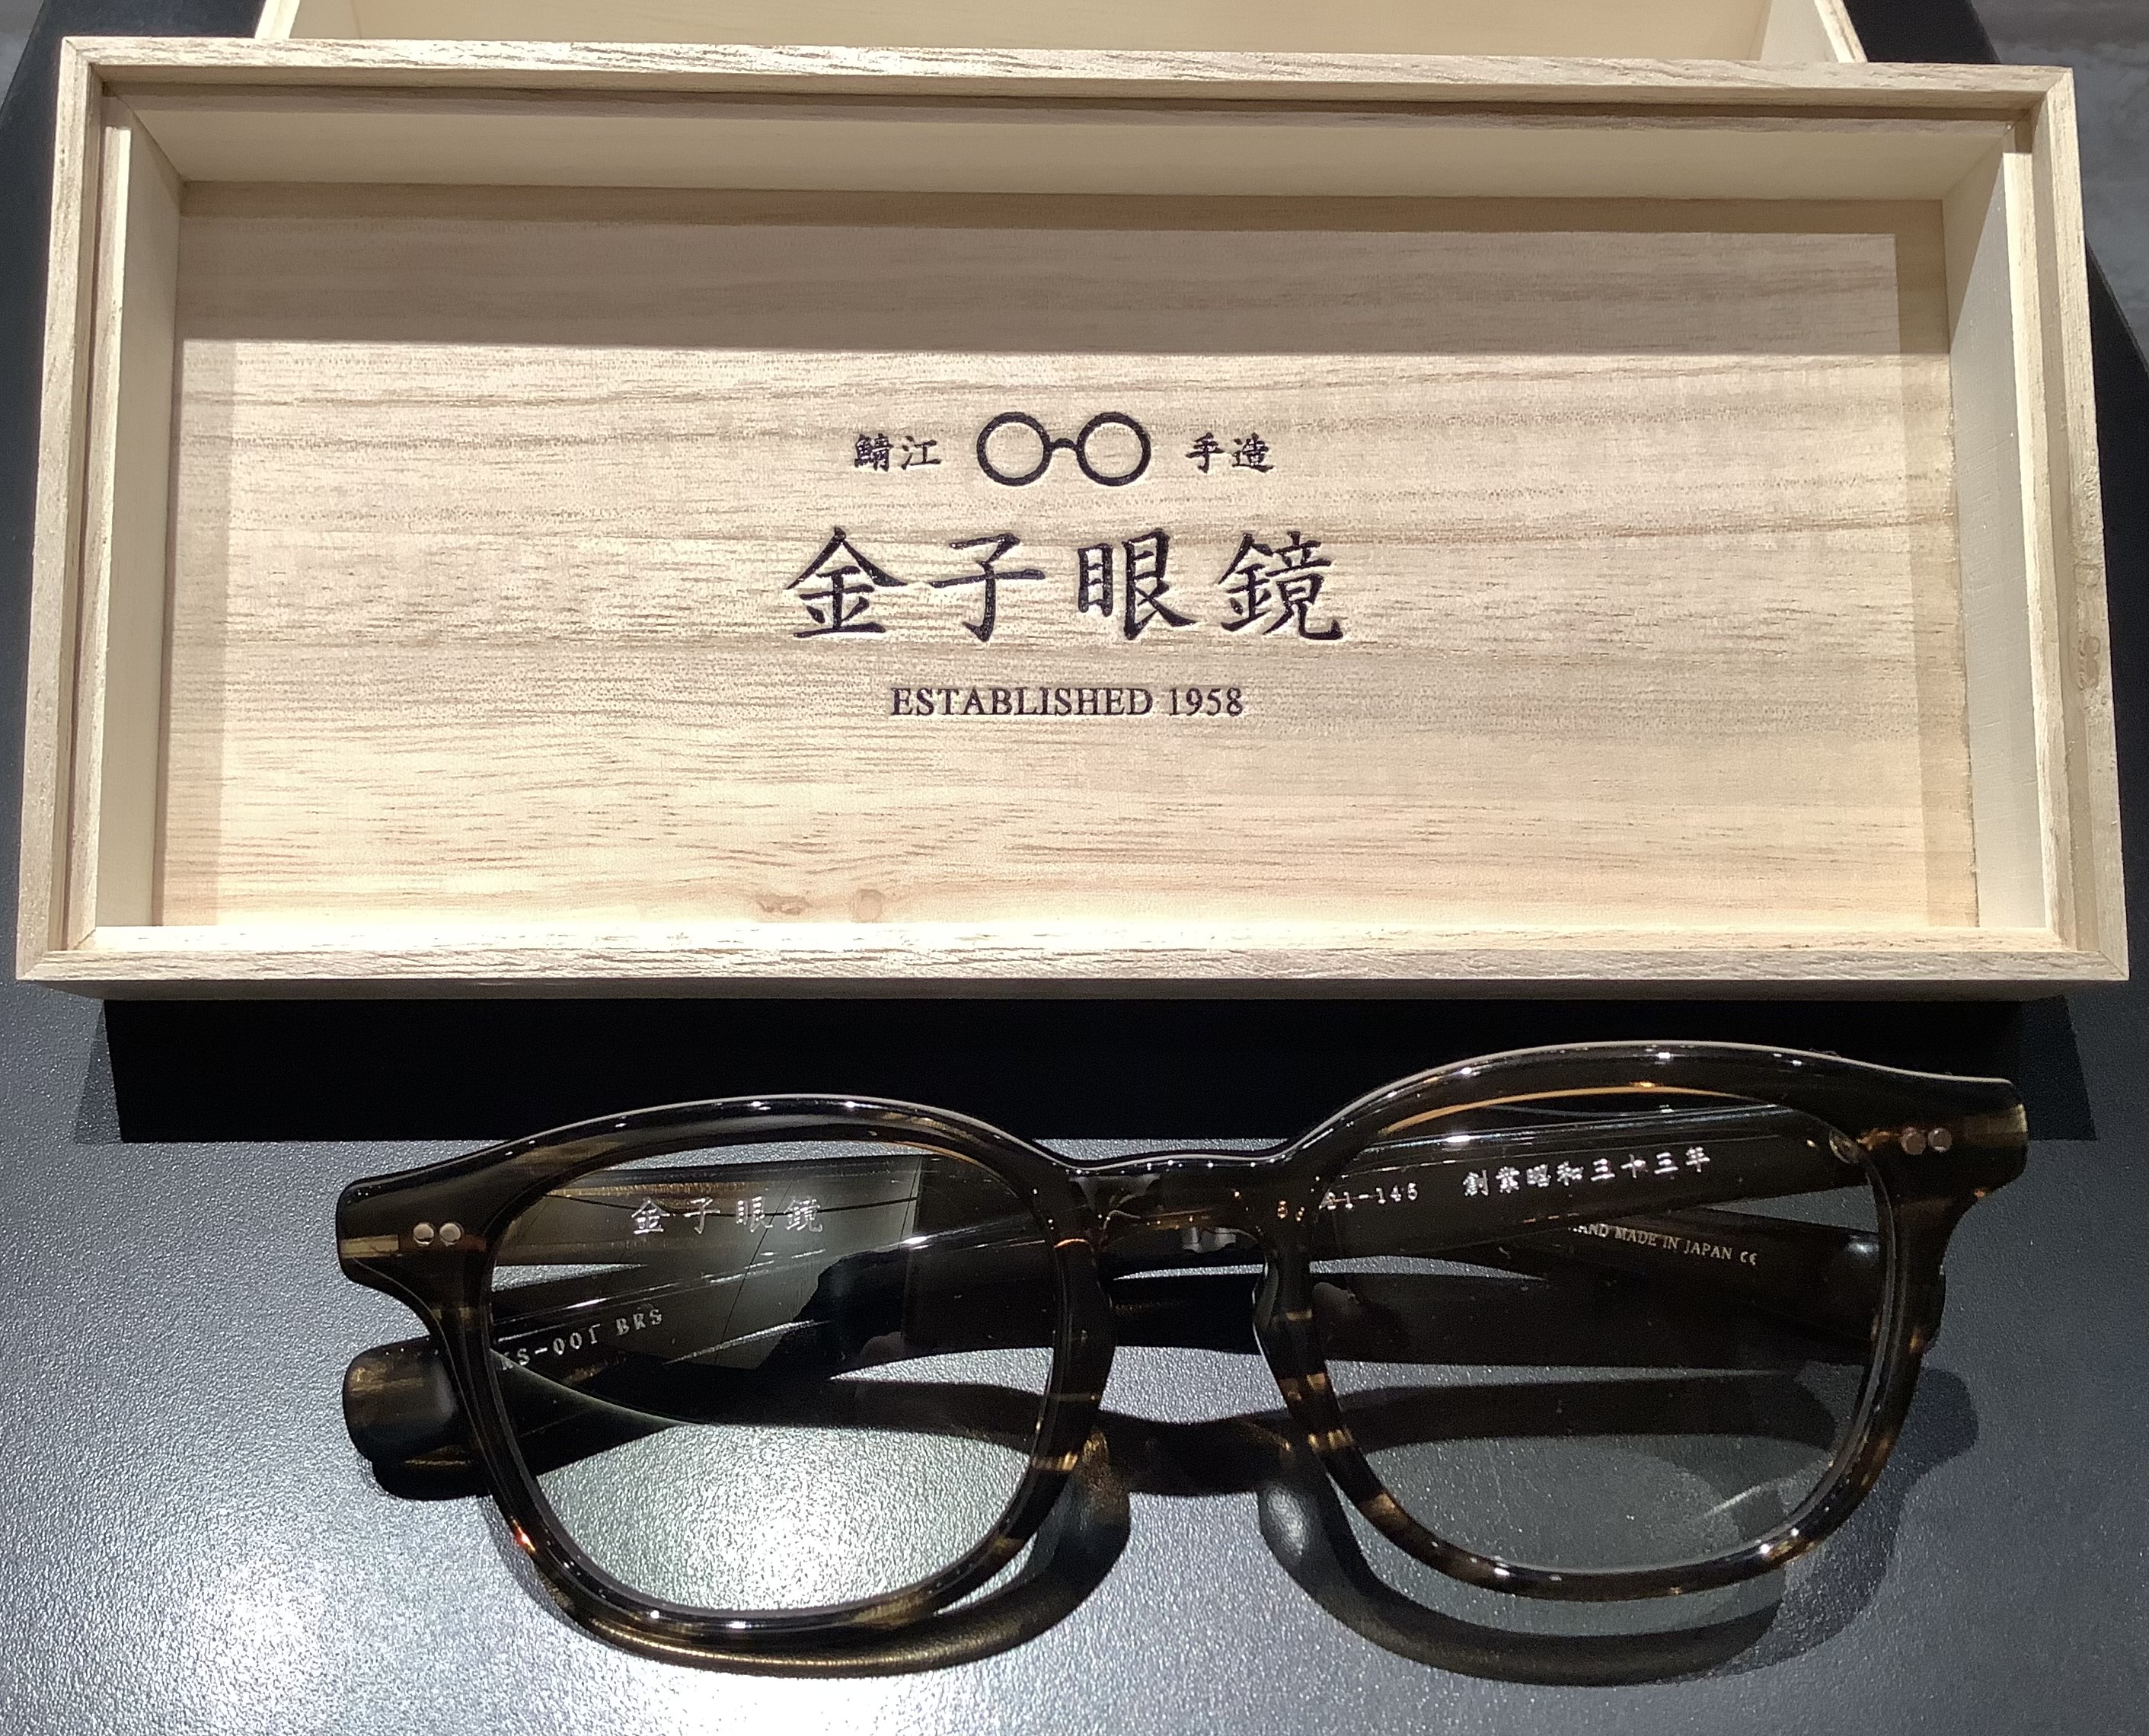 金子眼鏡KANEKO OPTICAL | 都市船塢LaLaport TOYOSU